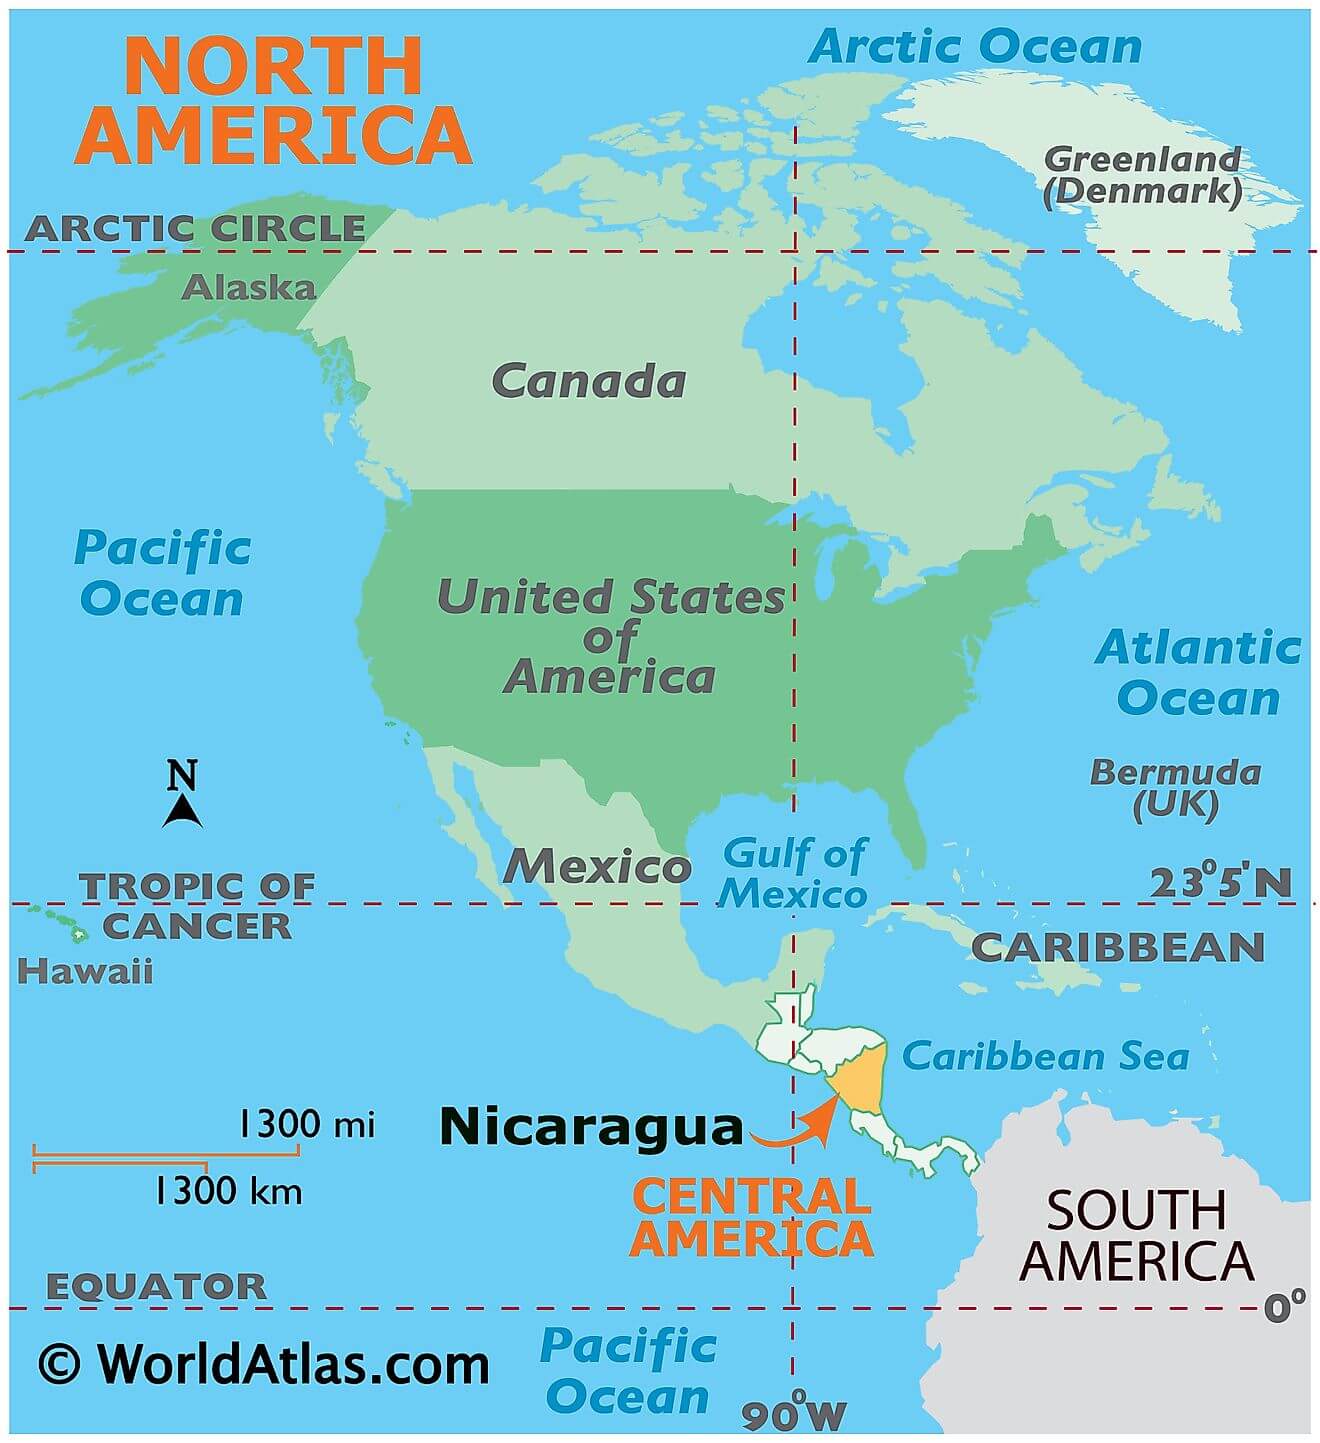 Nicaragua ở đâu?